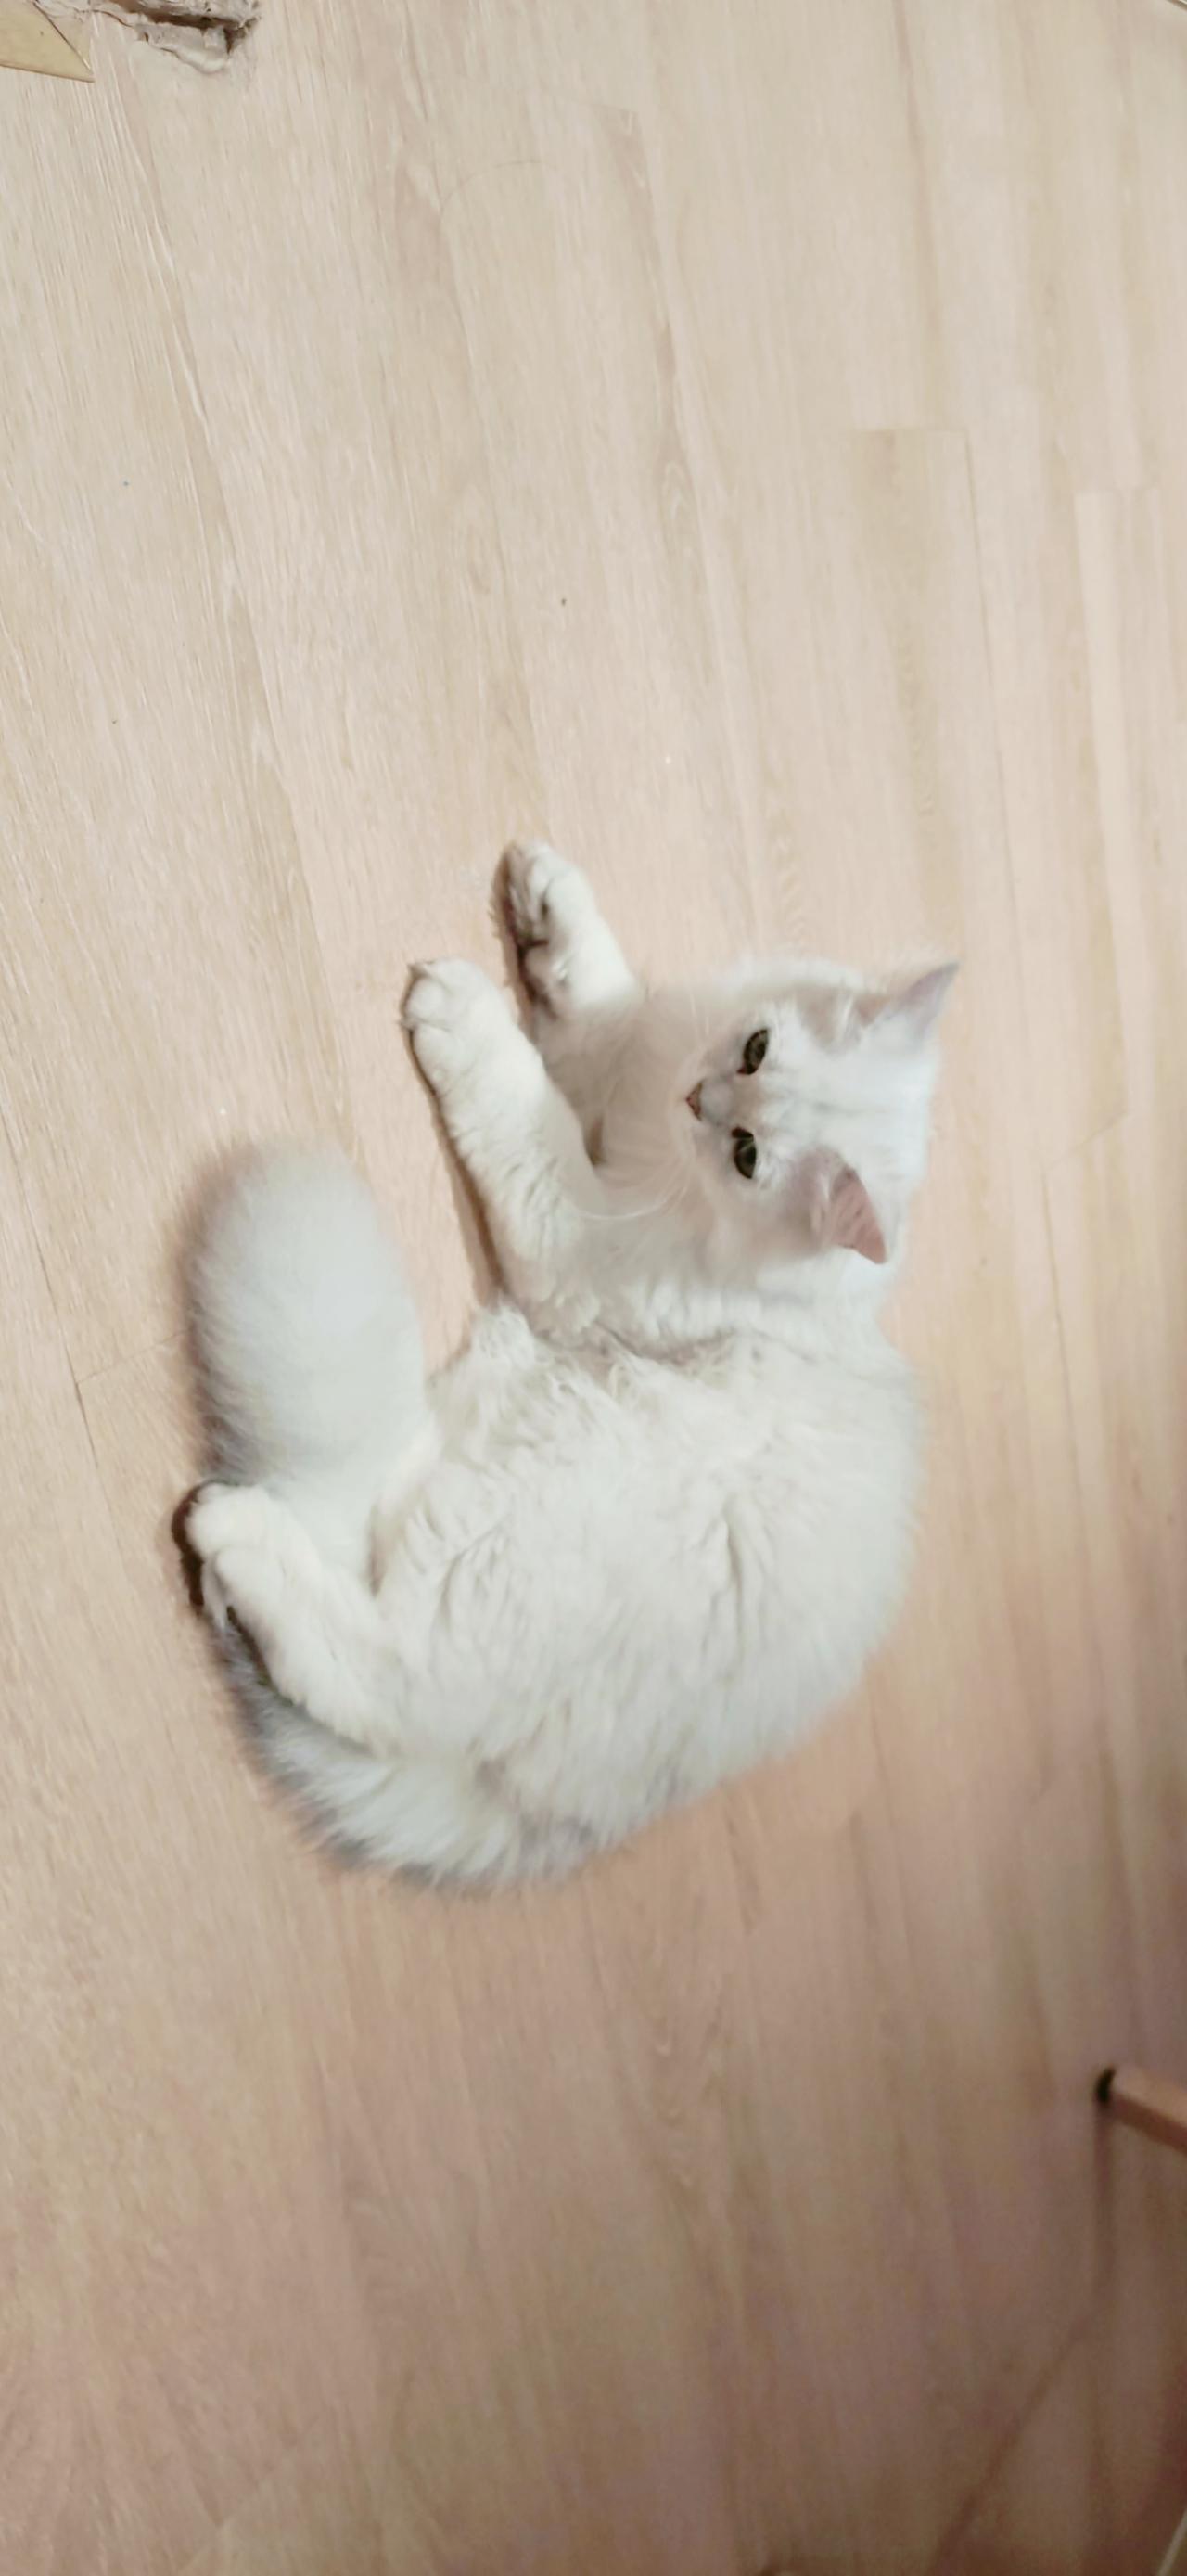 趴在木地板的白色猫咪 横屏电脑壁纸